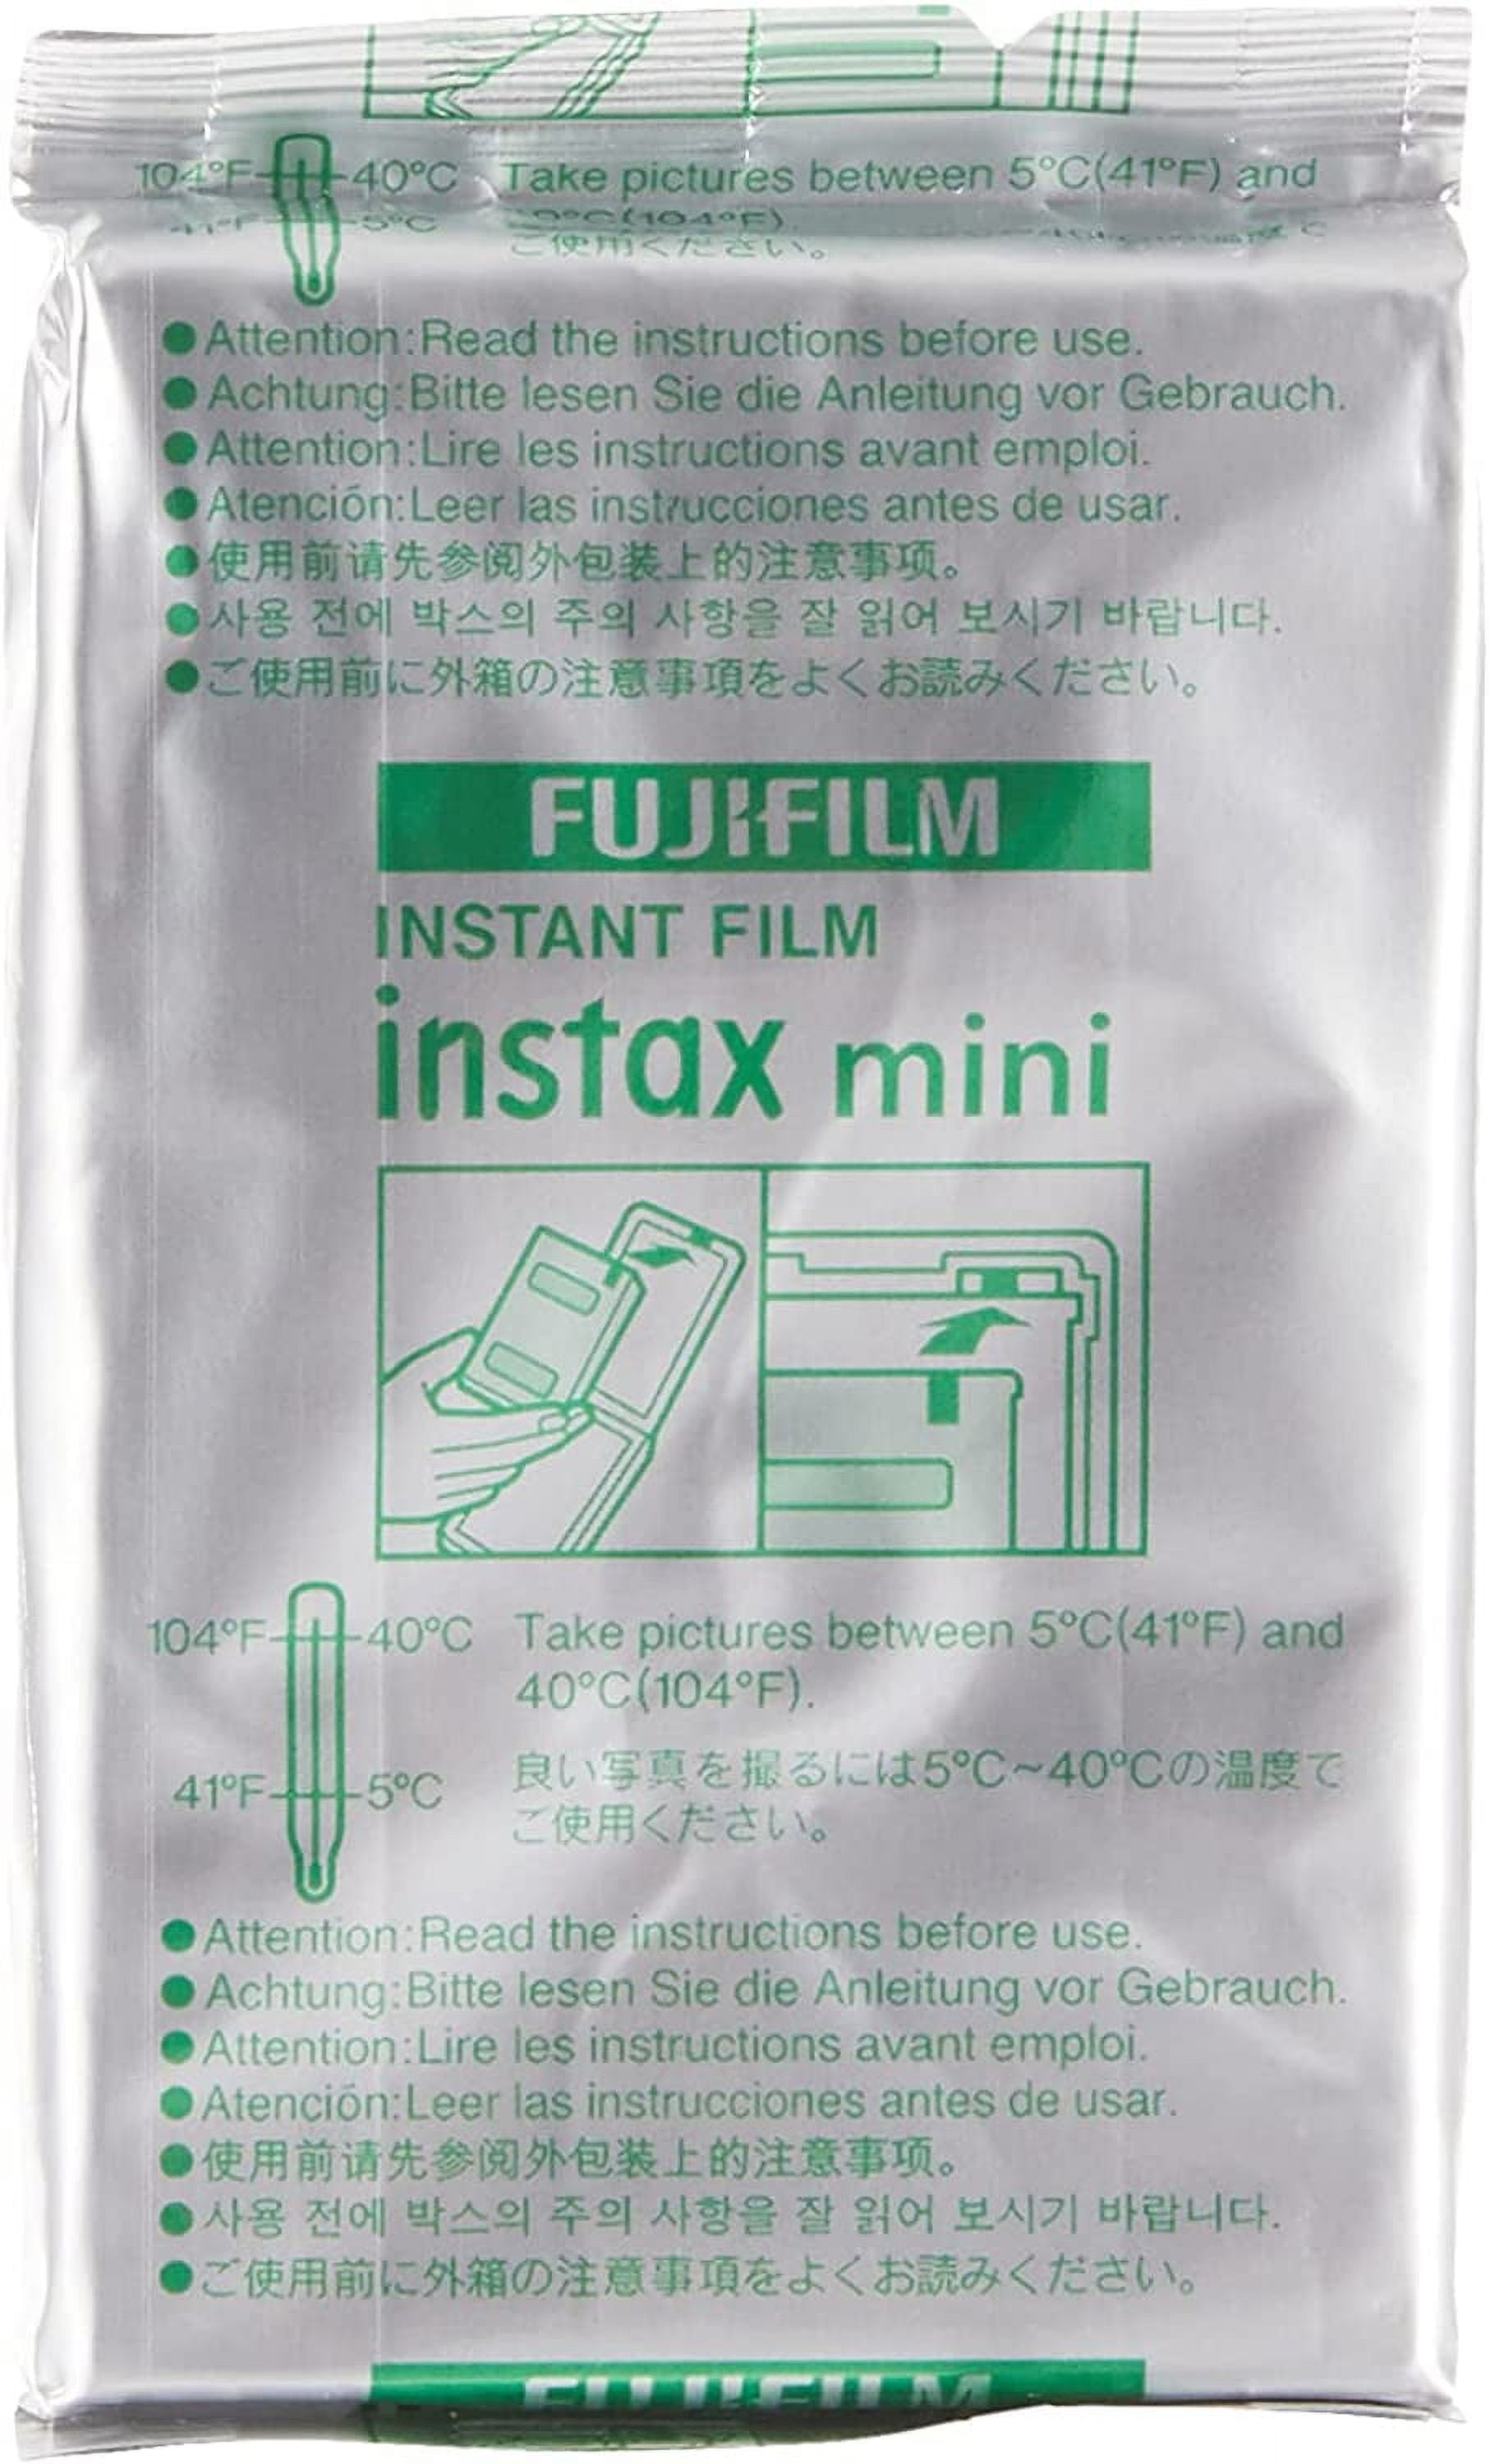 Fujifilm Instax Mini Standard Twin Pack desde 14,50 €